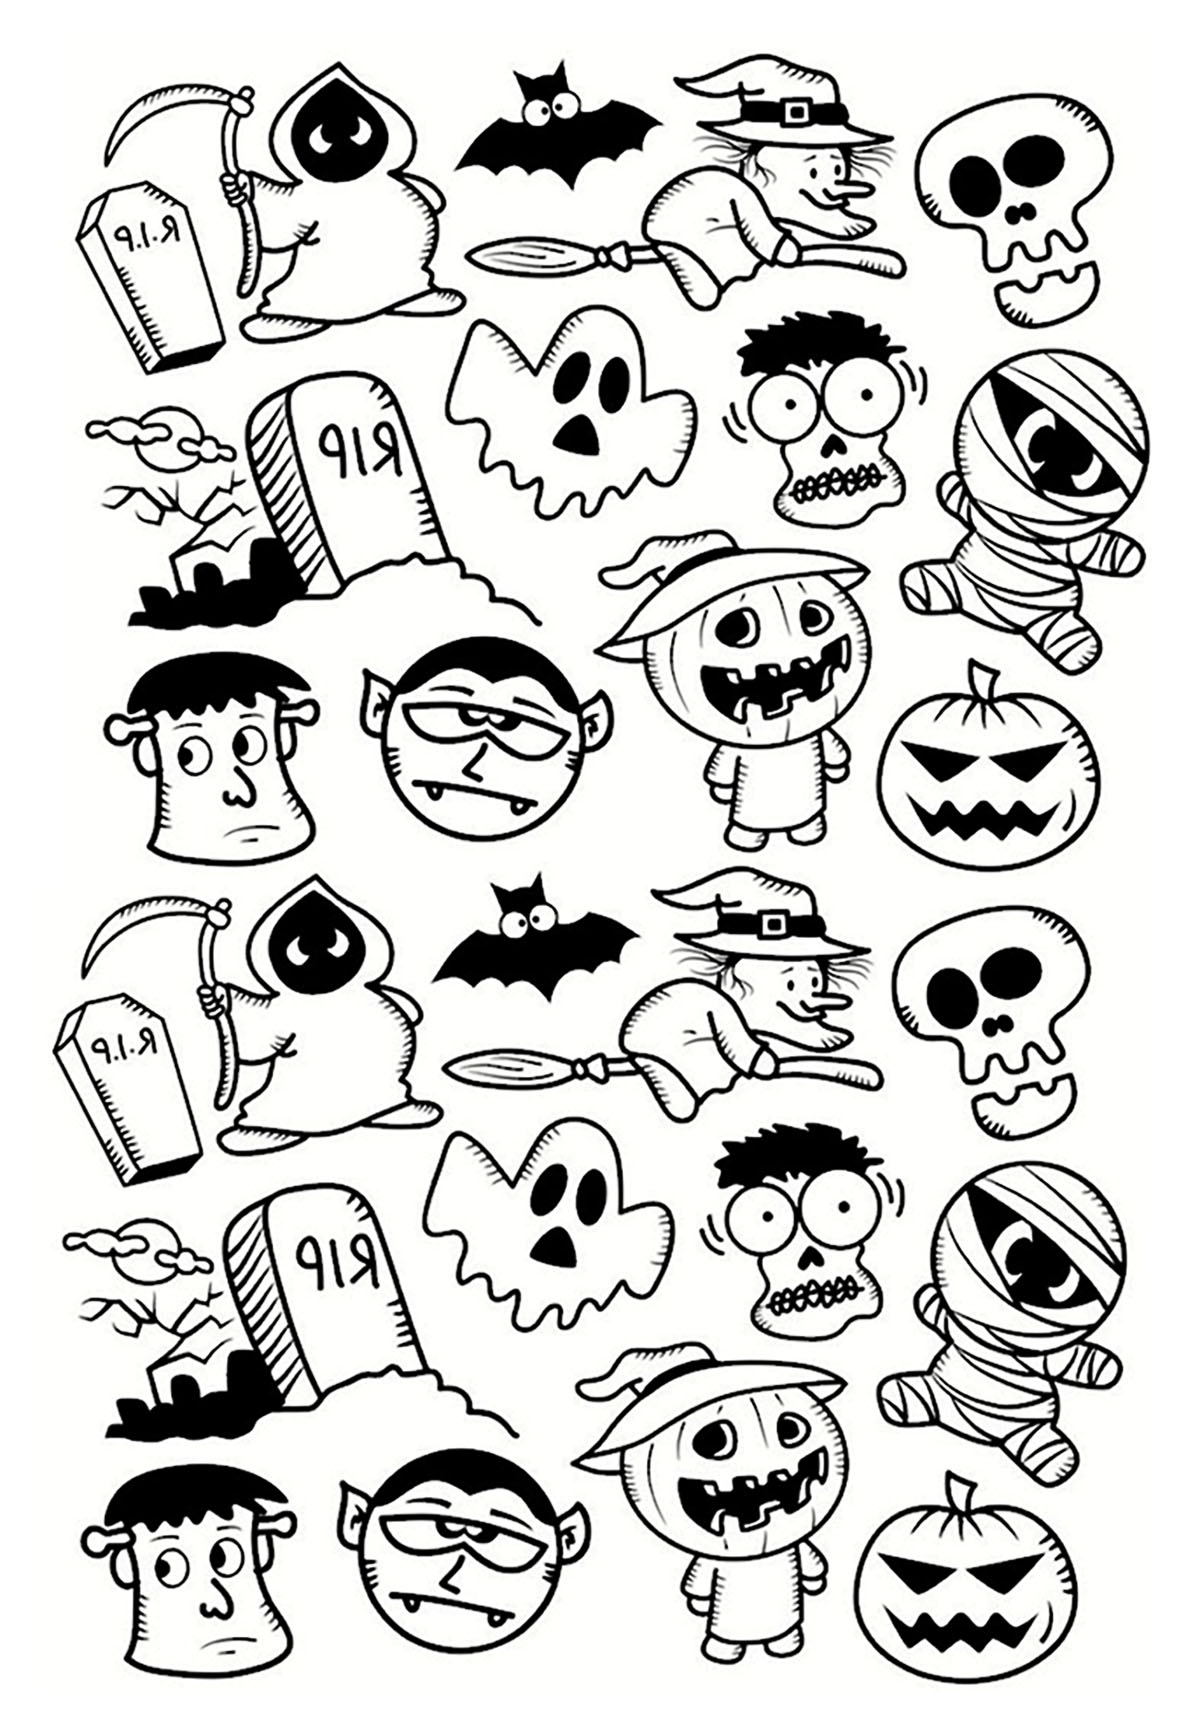 Halloween-Figuren, ein lustiges Doodle zum Ausmalen